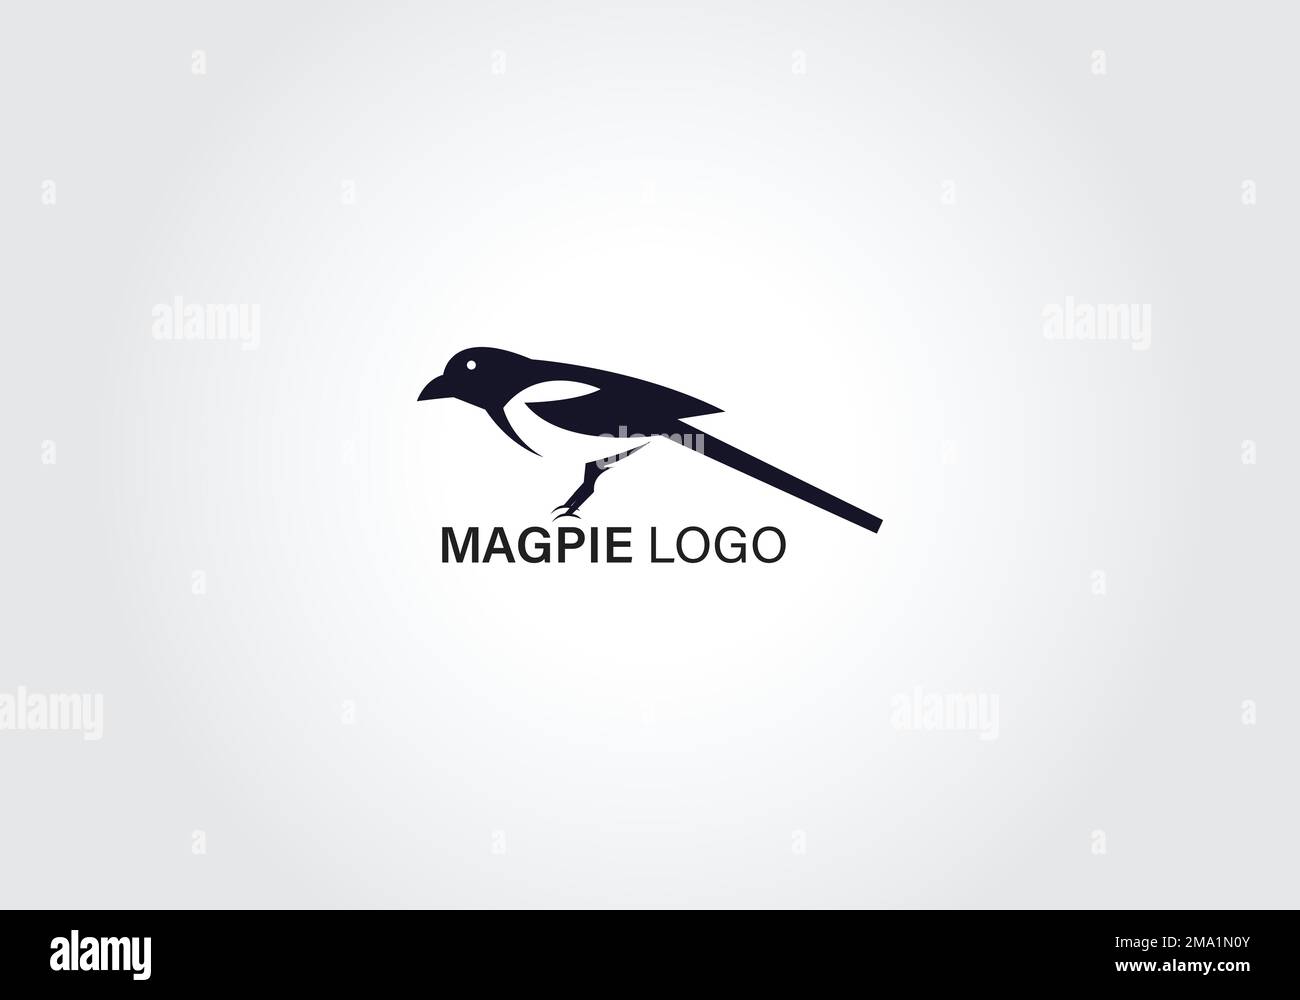 immagine vettoriale del logo dello spazio negativo dell'uccello magpie Illustrazione Vettoriale